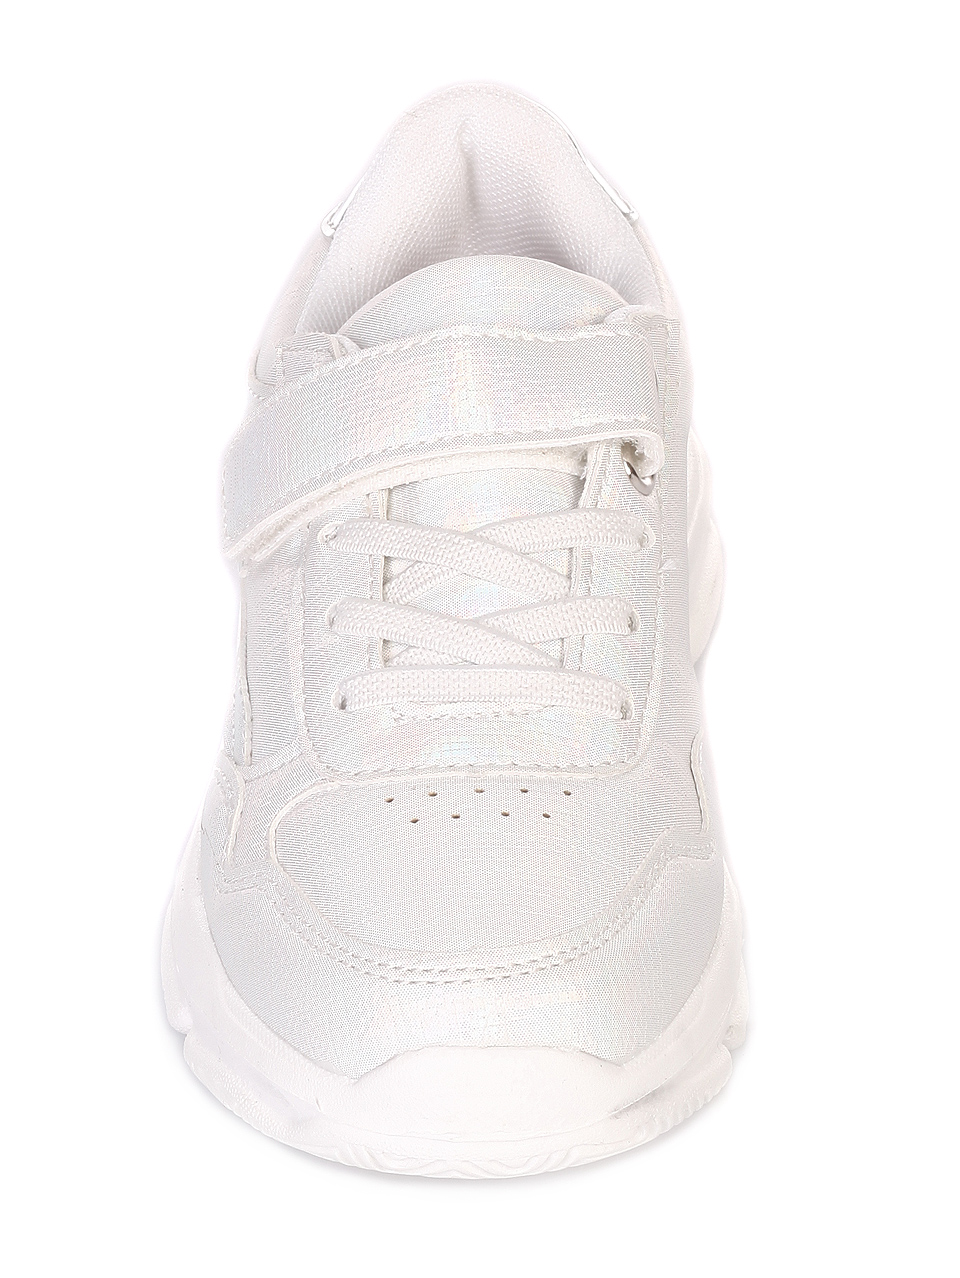 Ежедневни детски обувки в бяло 18U-19172 white